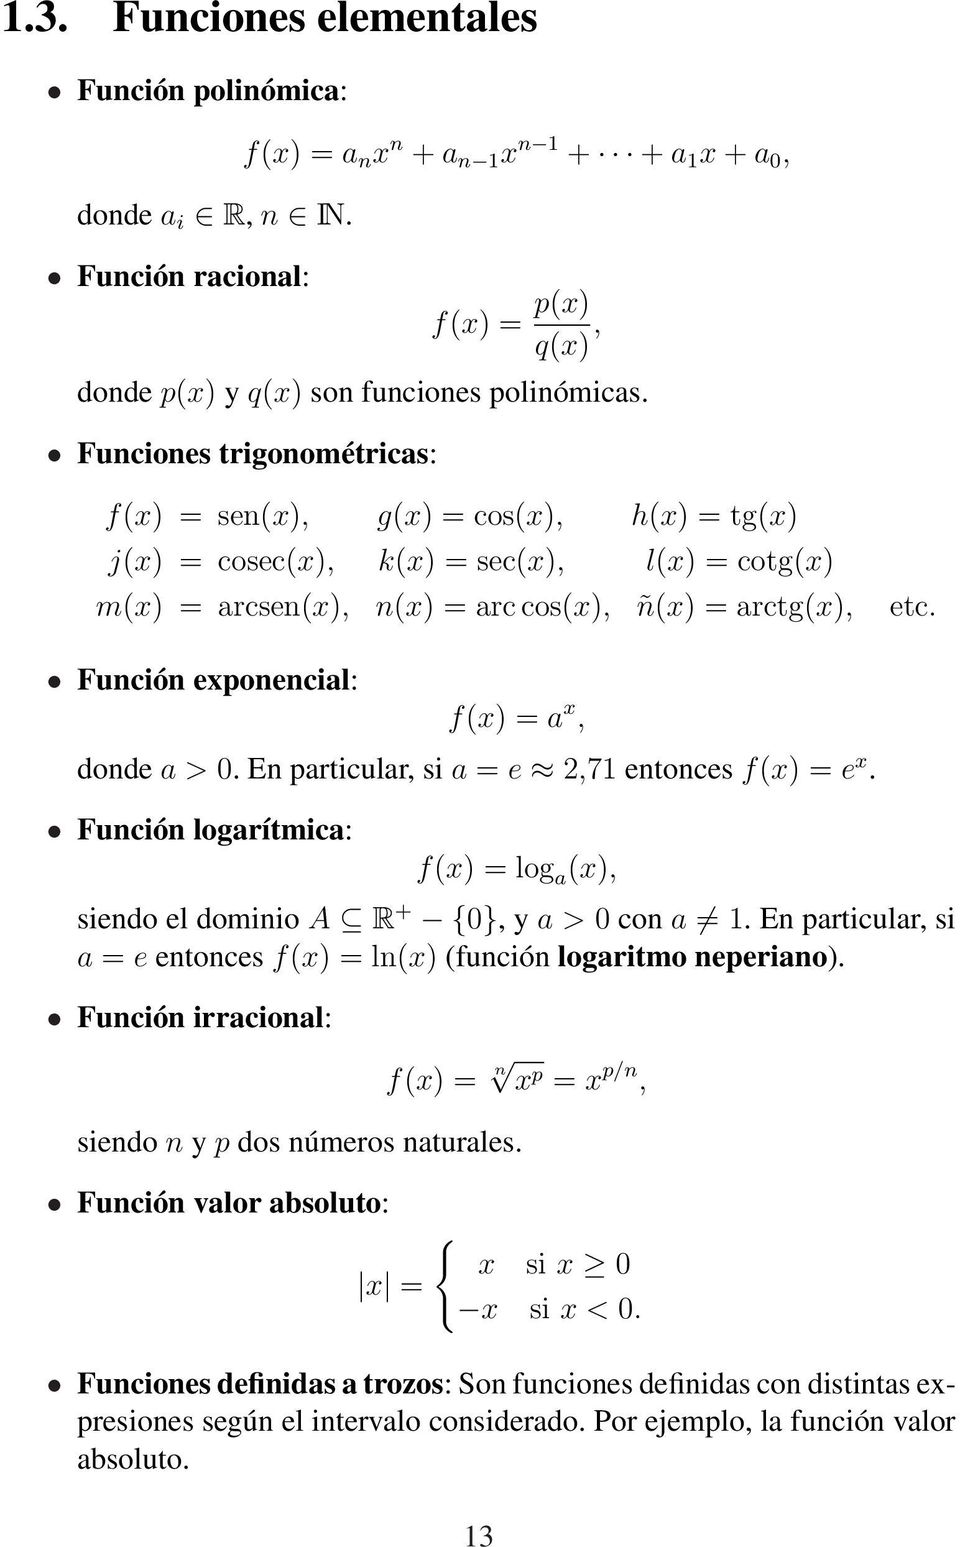 Función exponencial: f(x) = a x, donde a > 0. En particular, si a = e 2,71 entonces f(x) = e x. Función logarítmica: f(x) = log a (x), siendo el dominio A R + {0}, y a > 0 con a 1.